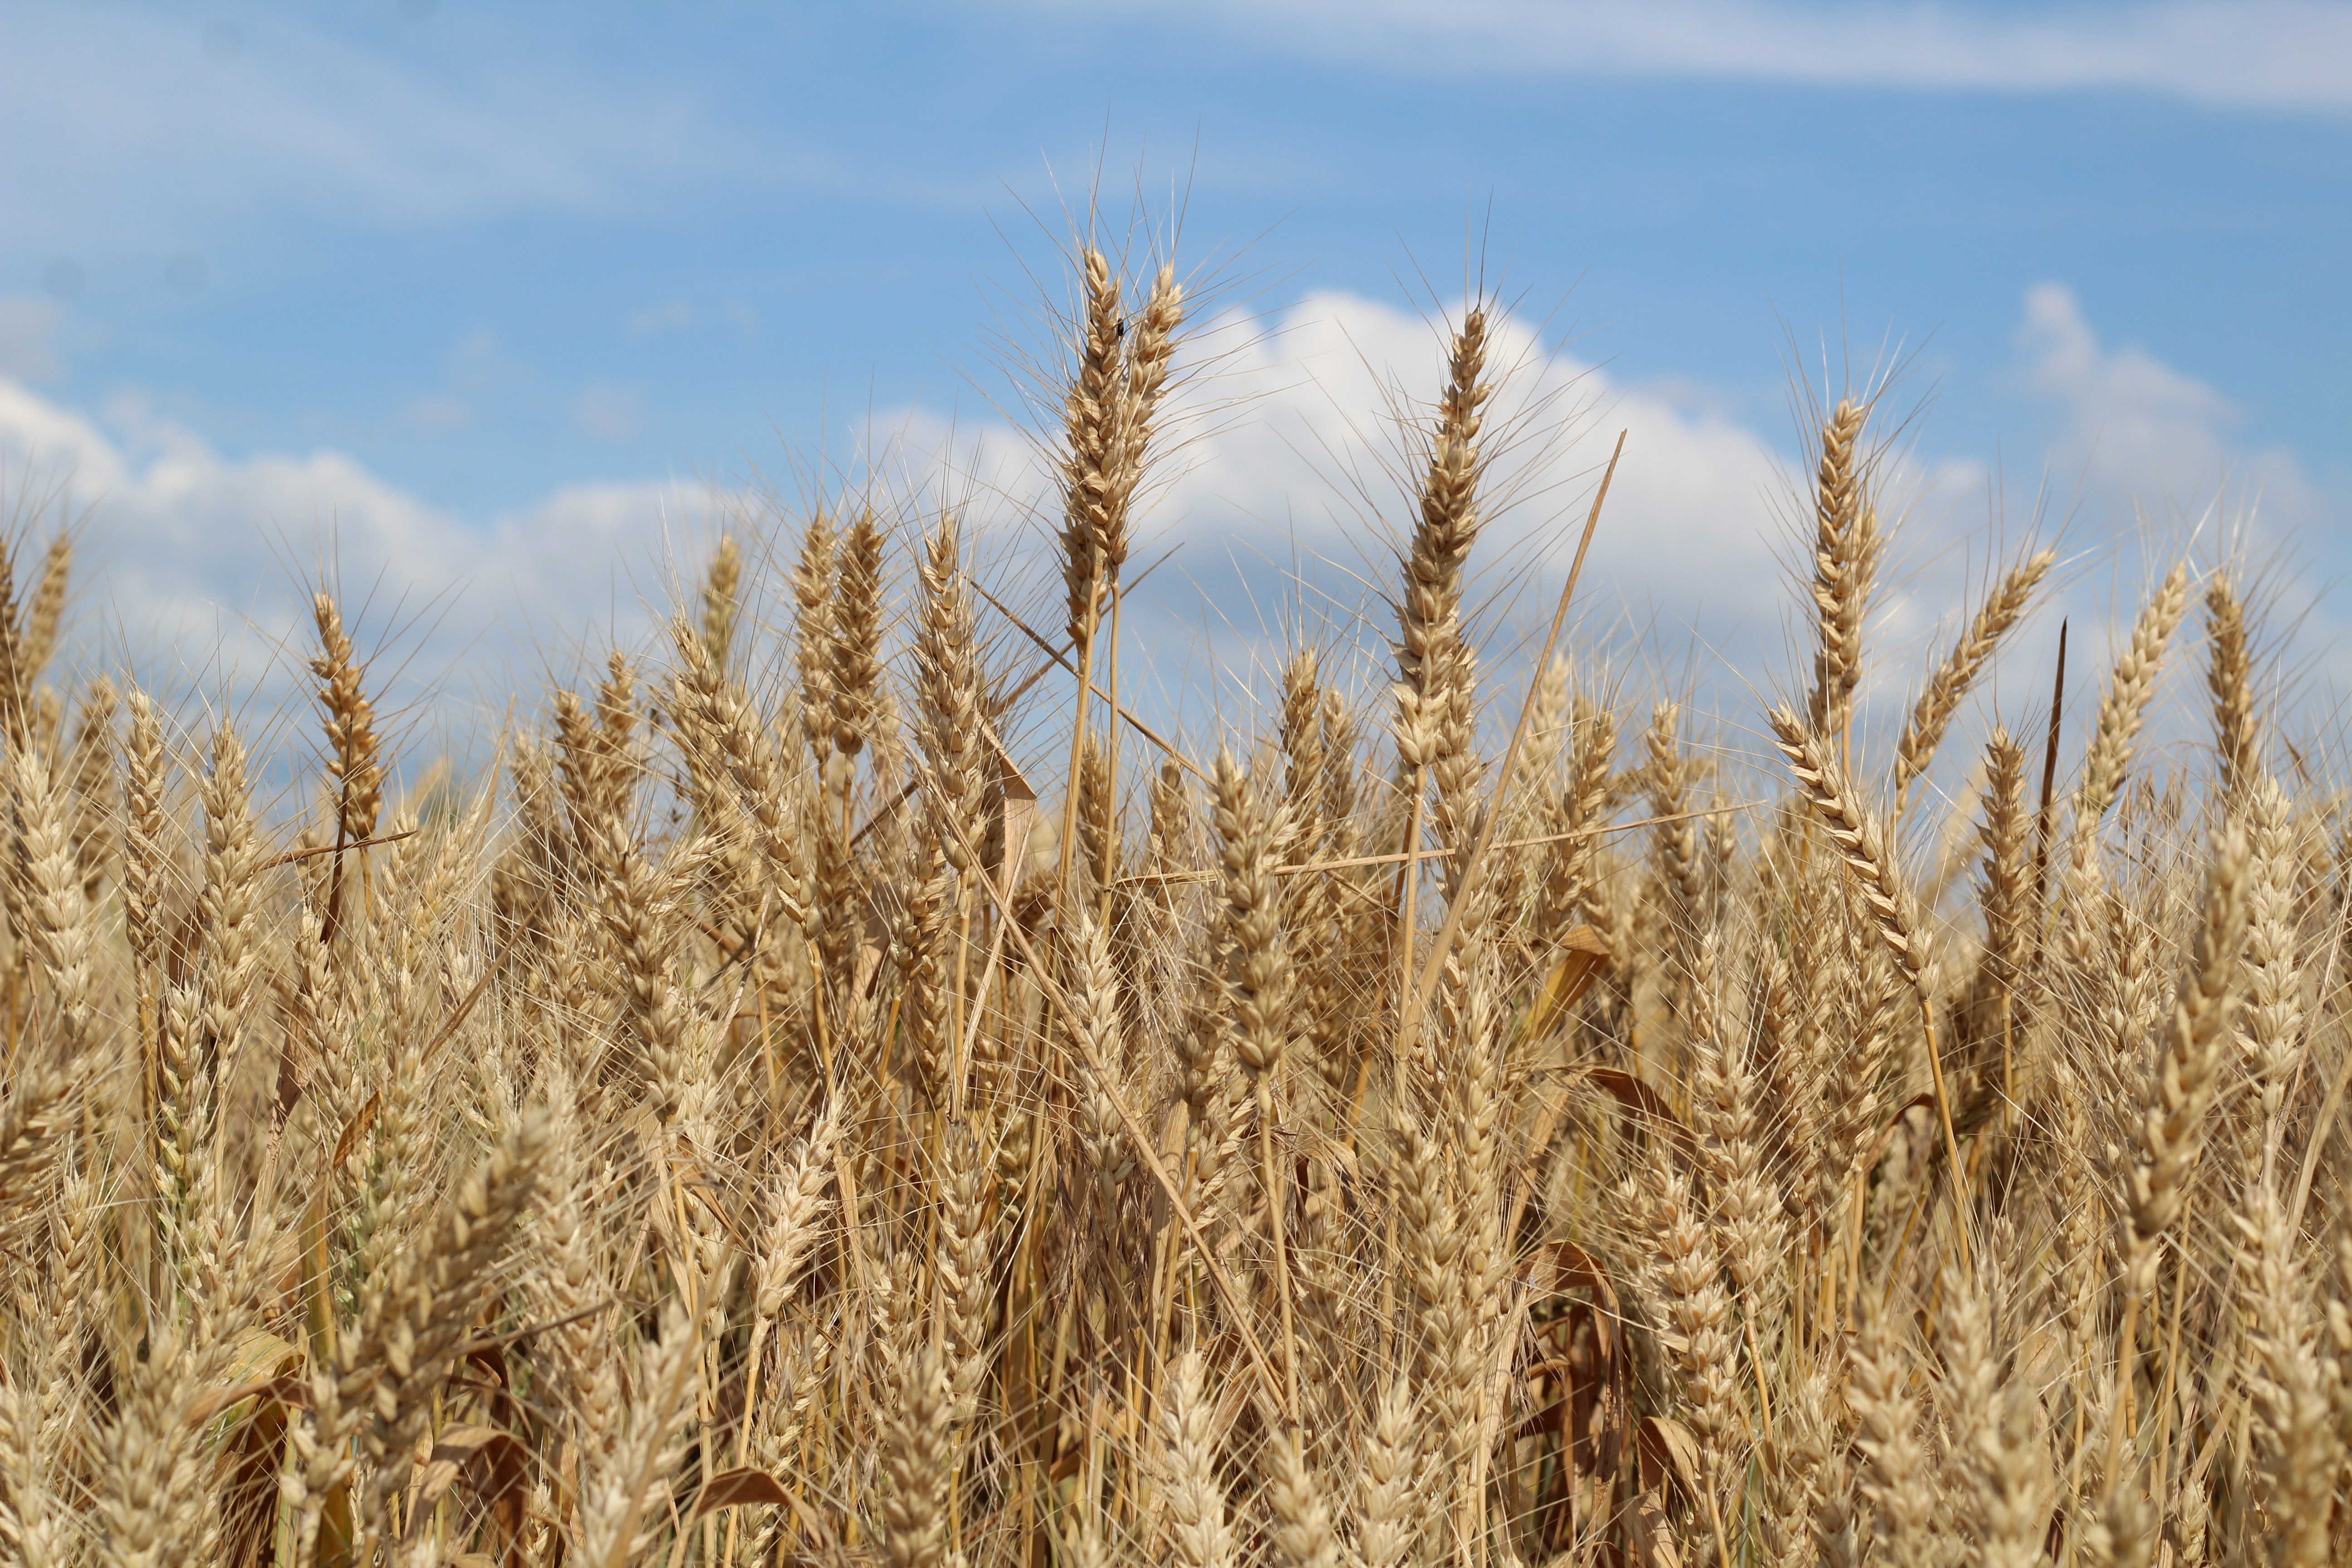 Wheat fields in Ukraine